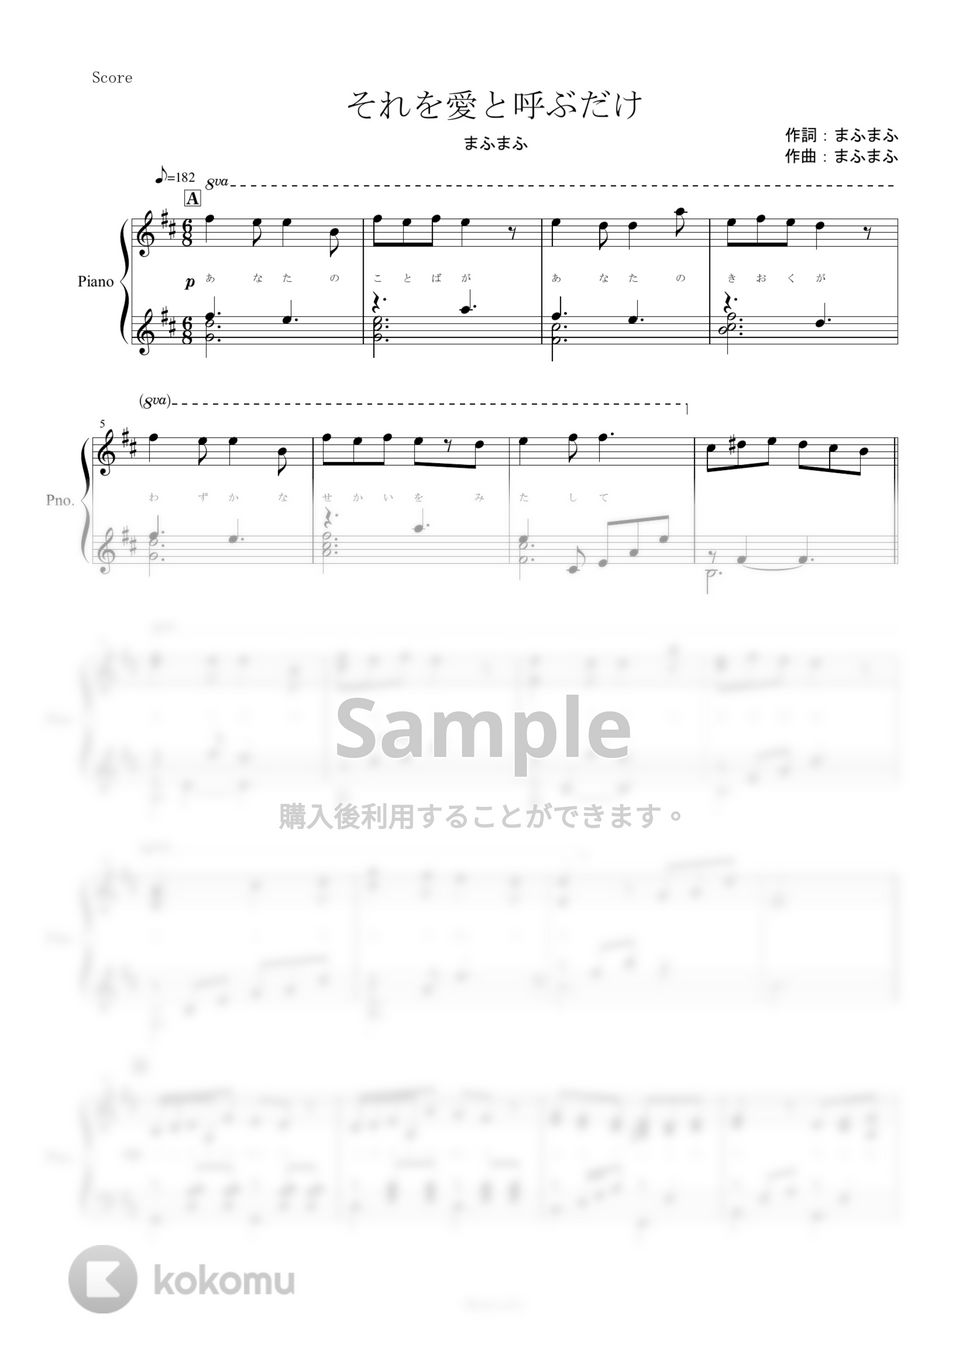 まふまふ - それを愛と呼ぶだけ (ピアノ楽譜/全６ページ) by yoshi